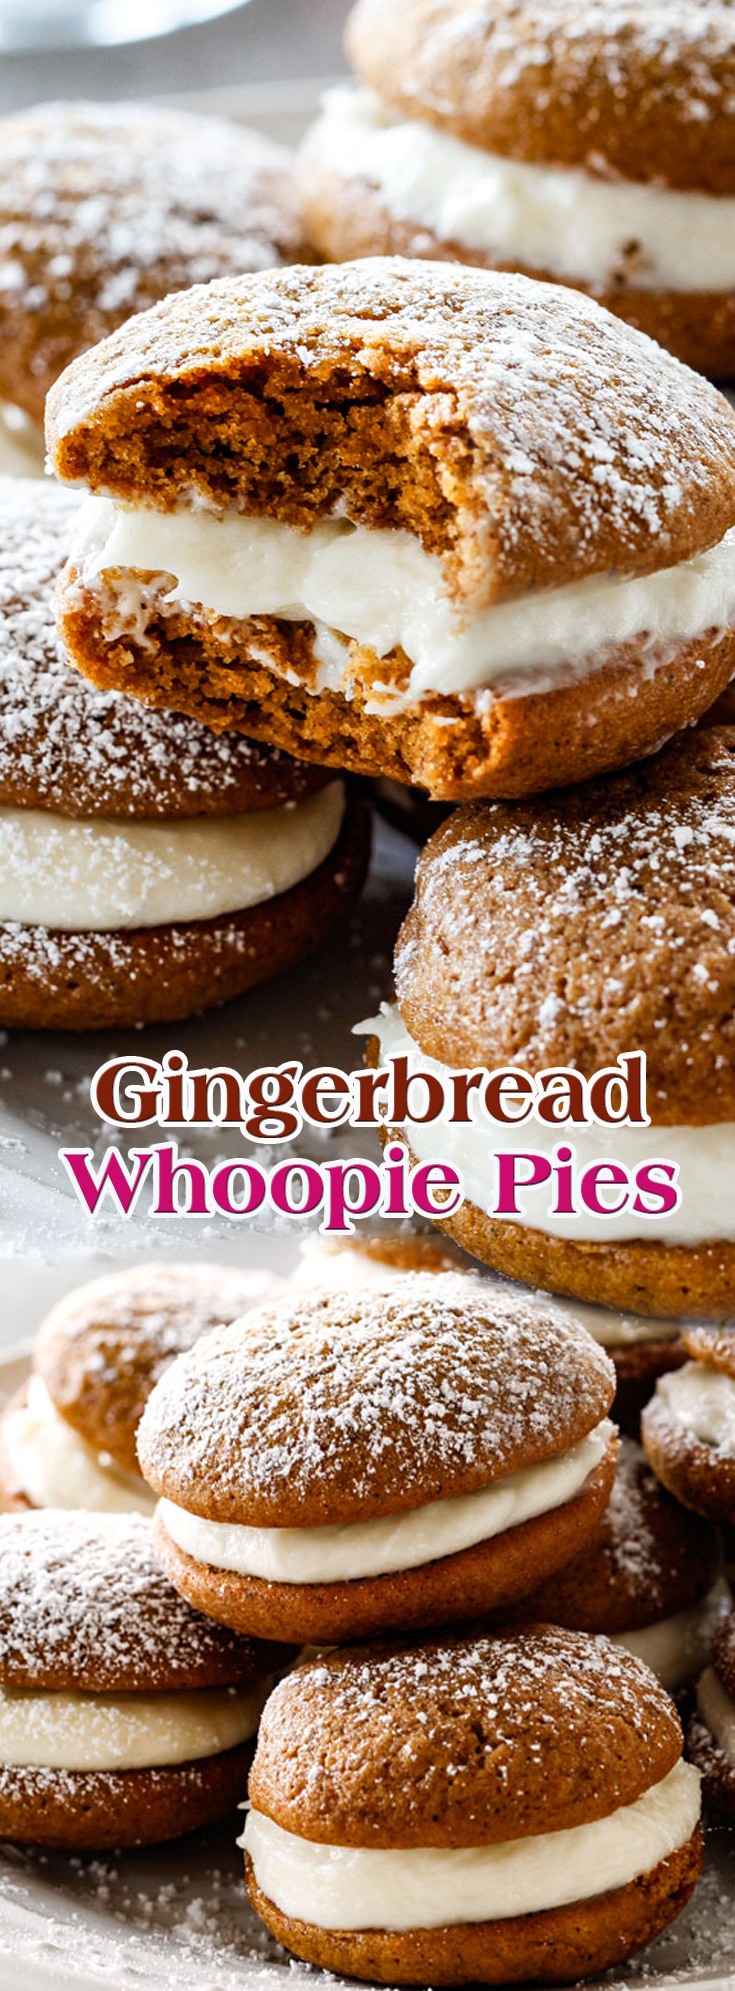 Gingerbread Whoopie Pies